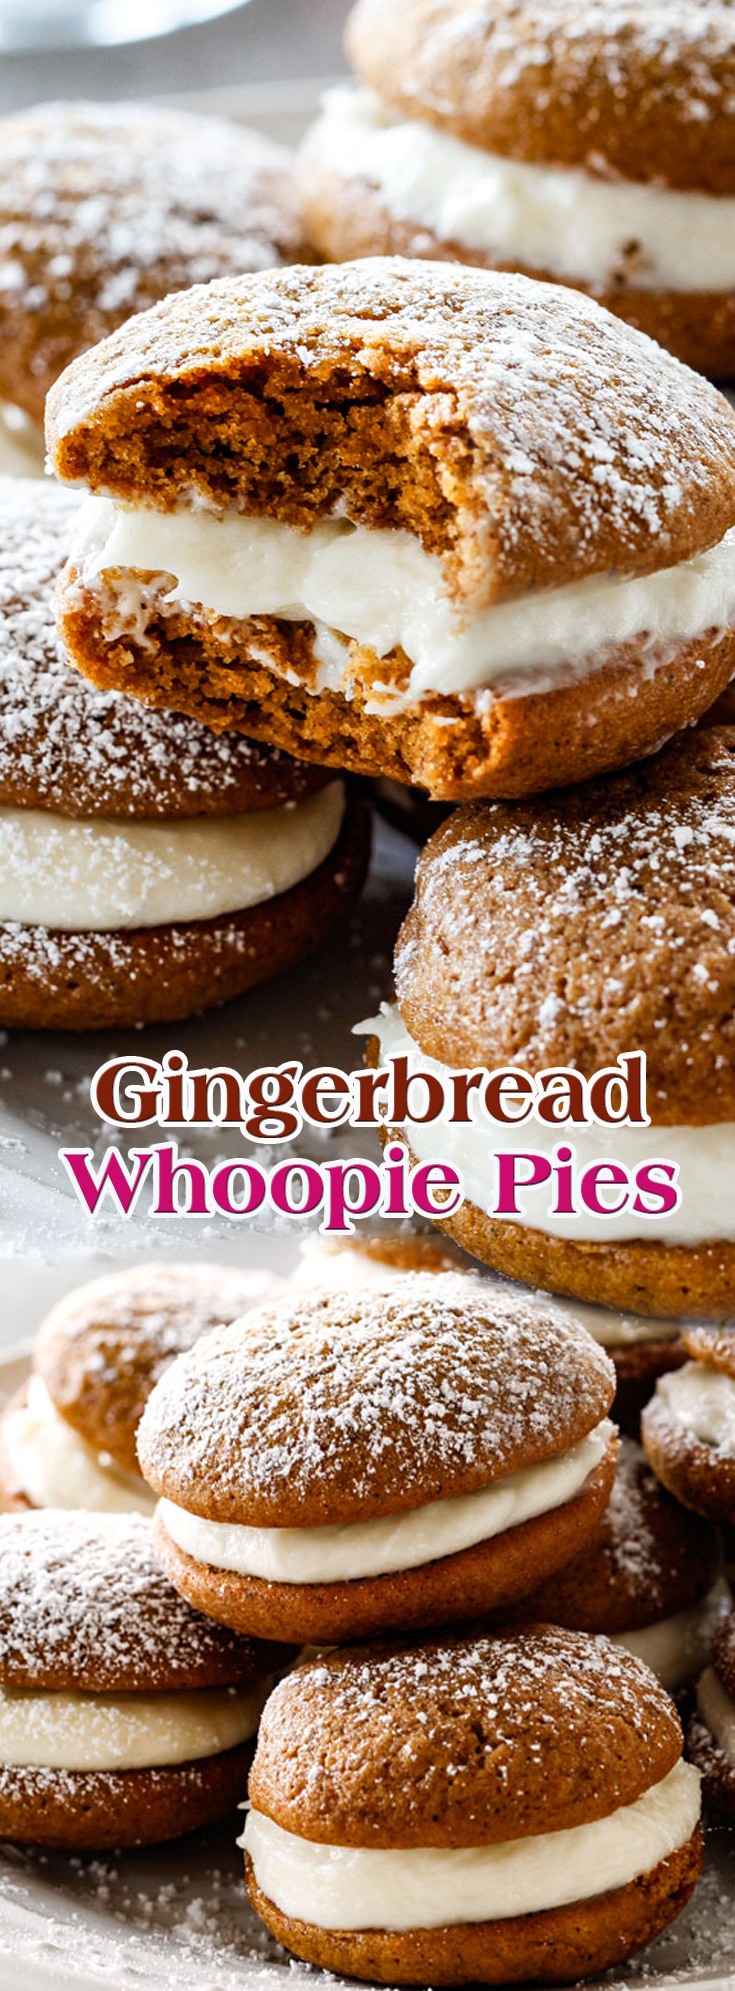 Gingerbread Whoopie Pies